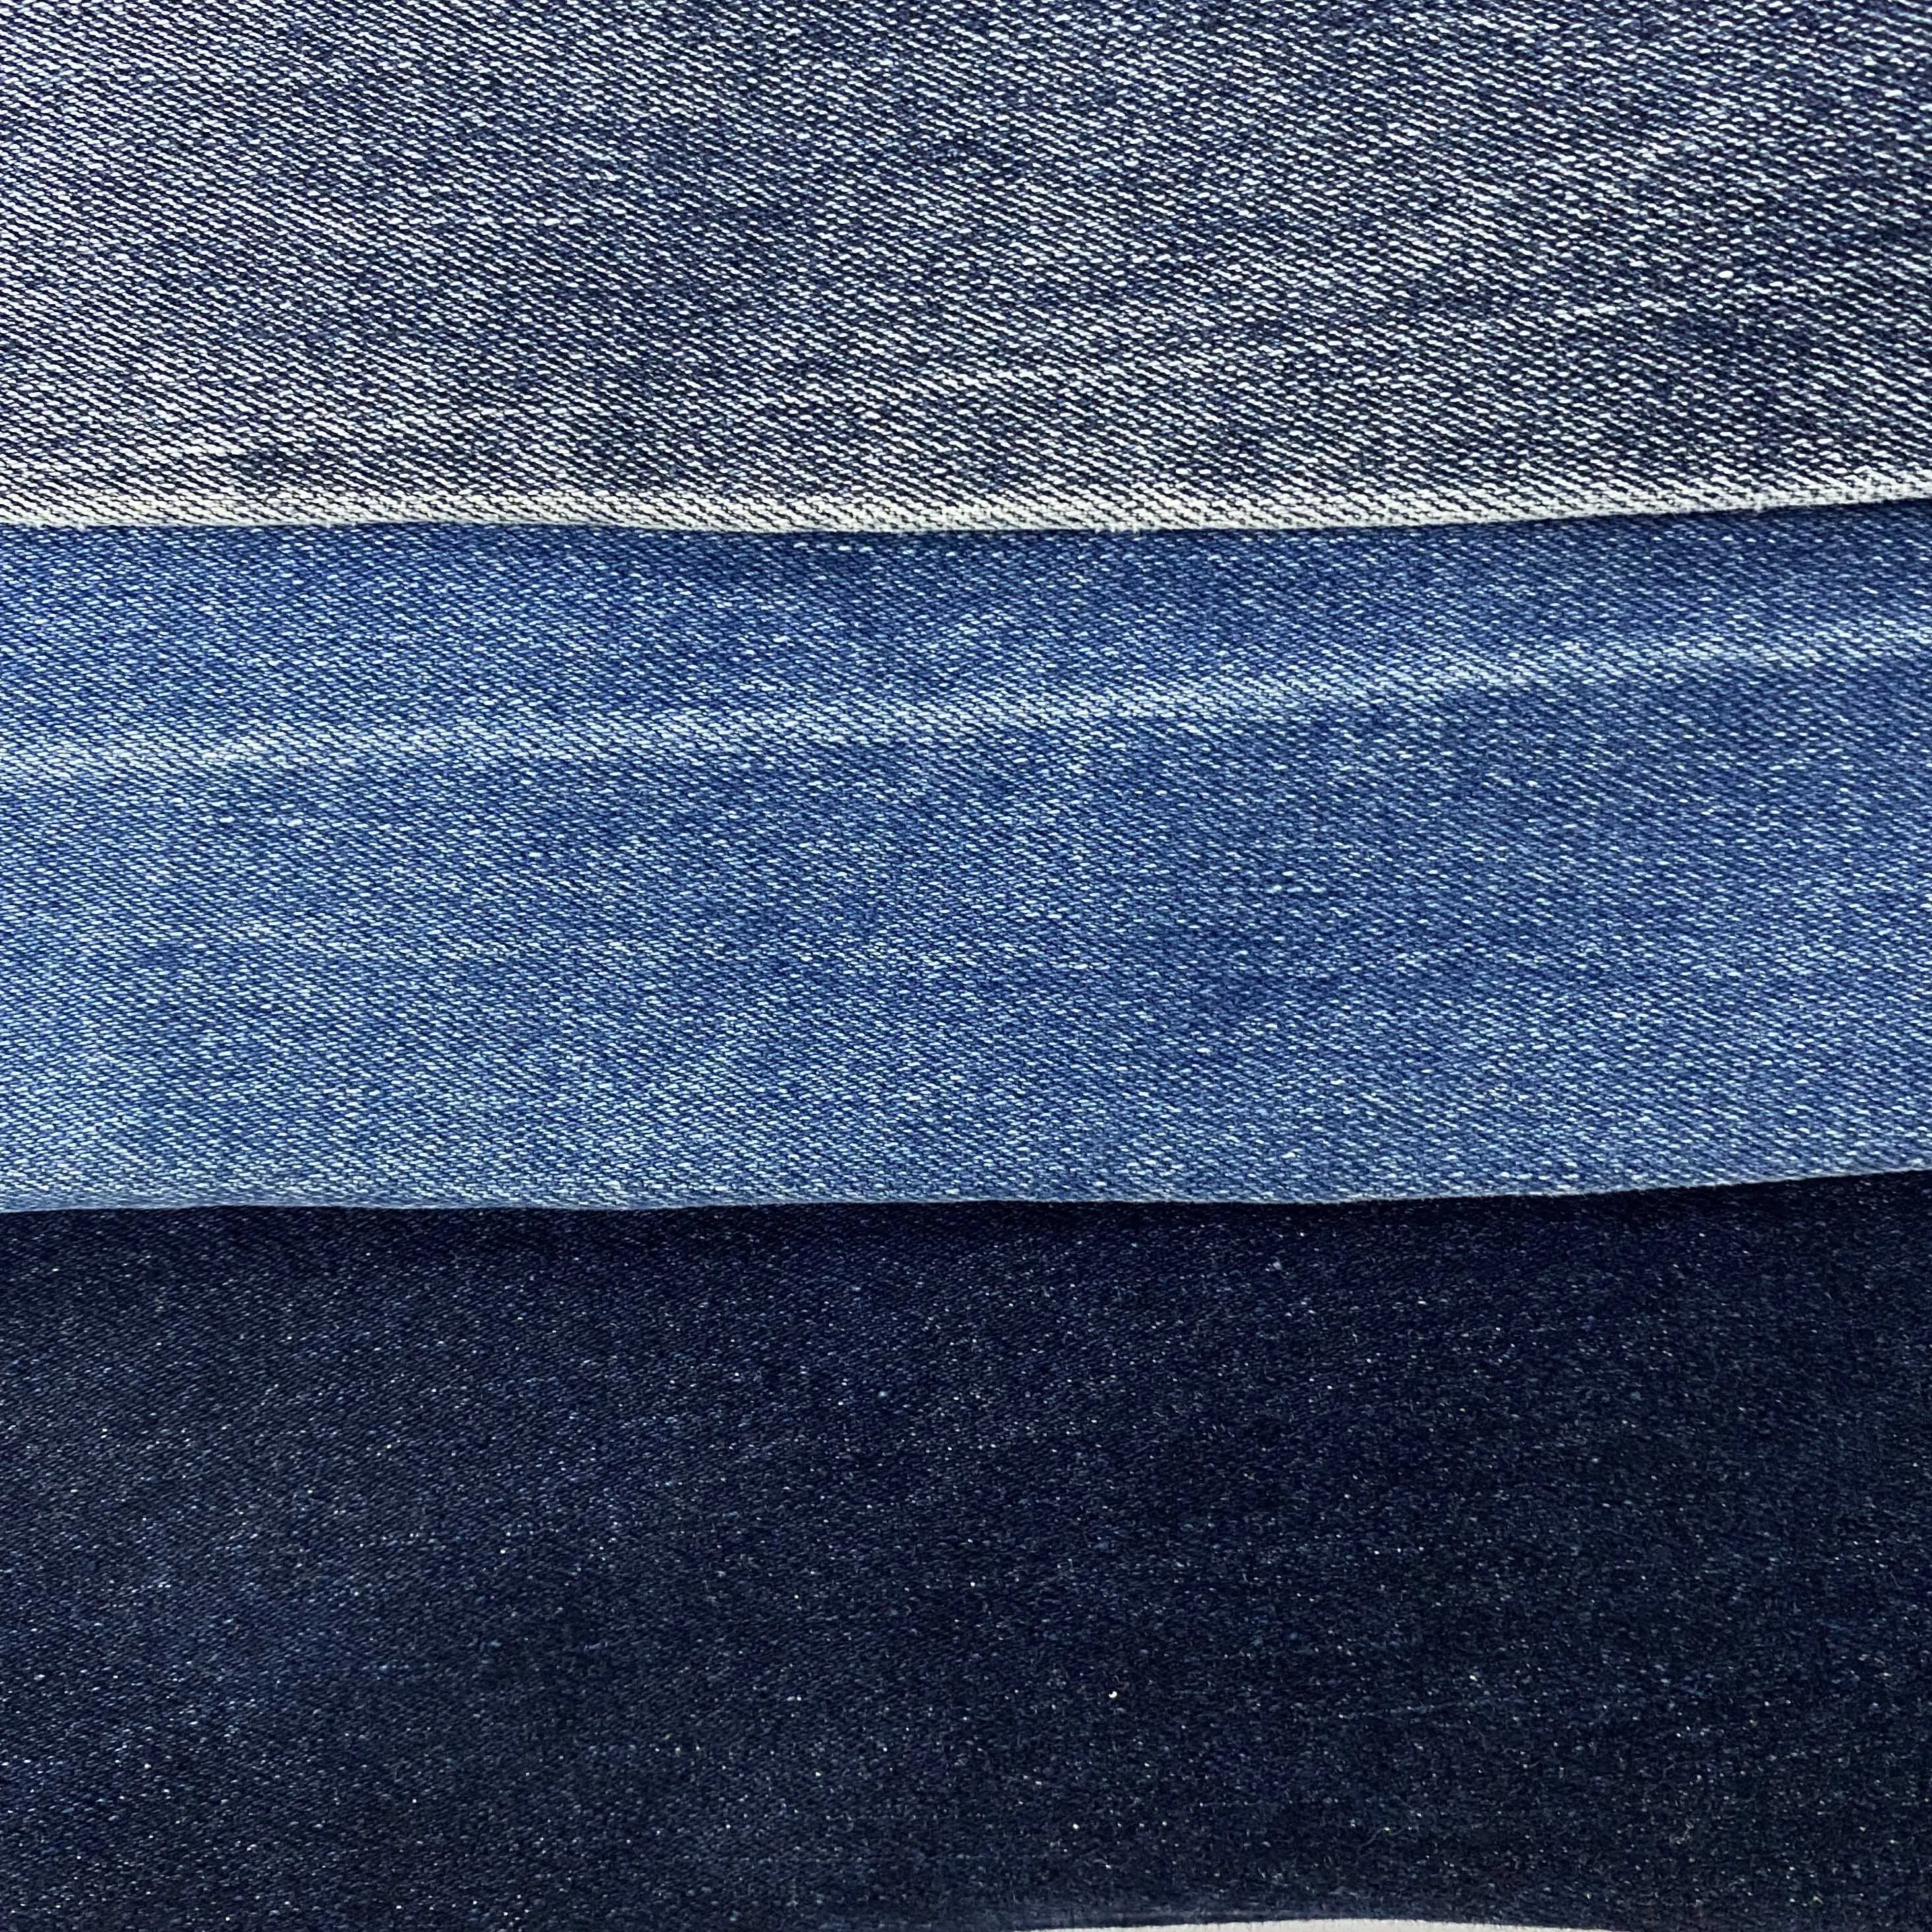 Nuovo 2022 migliore qualità prezzo economico tessuto denim Stock vendita calda 100% cotone Denim stock tessuto per abbigliamento jeans